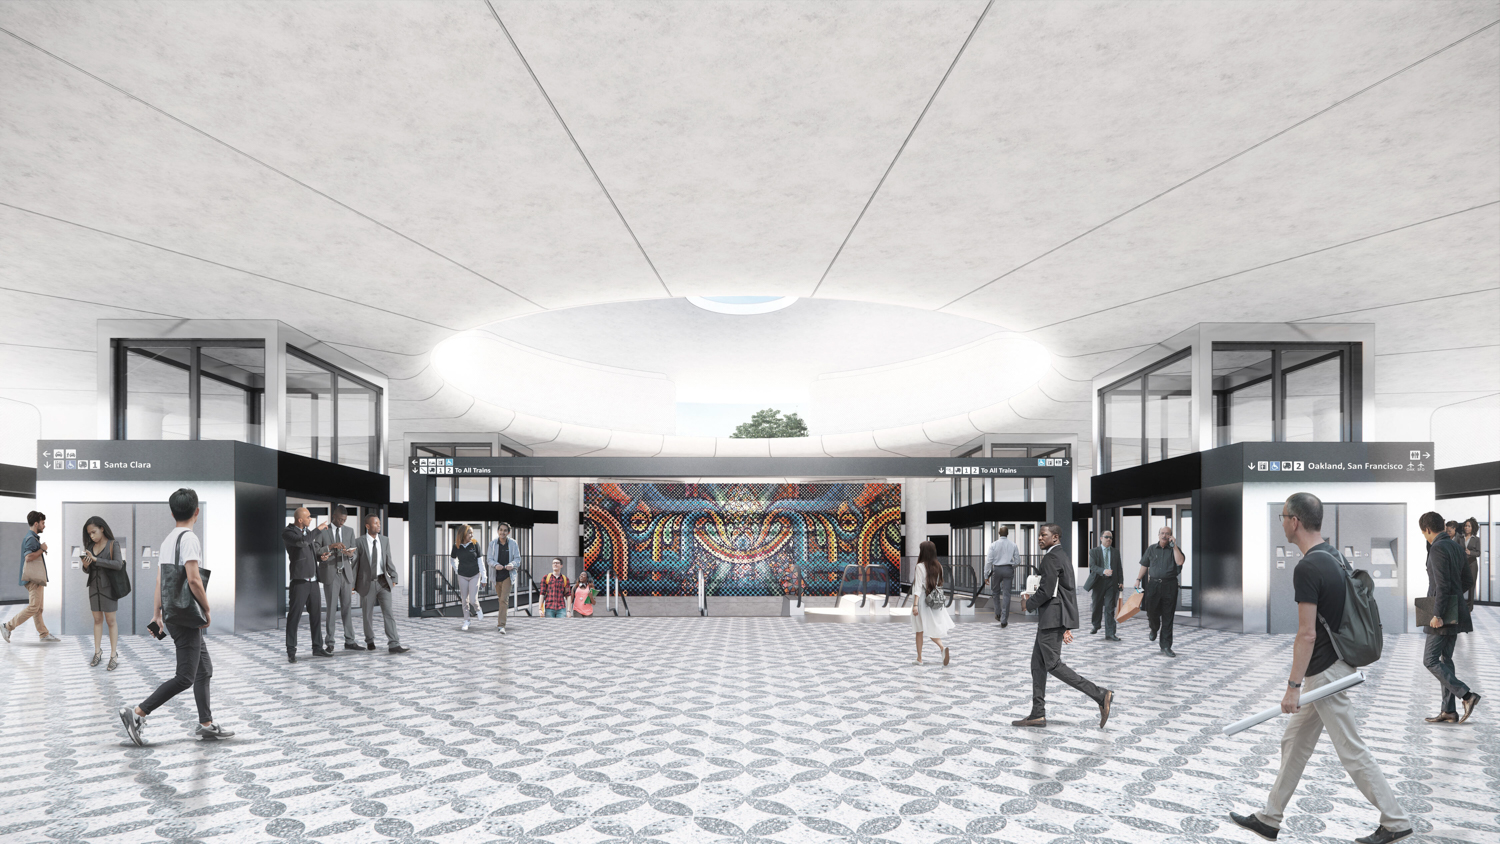 28th Street Little Portugal Station entrance option A, patterned floor finish, image via VTA